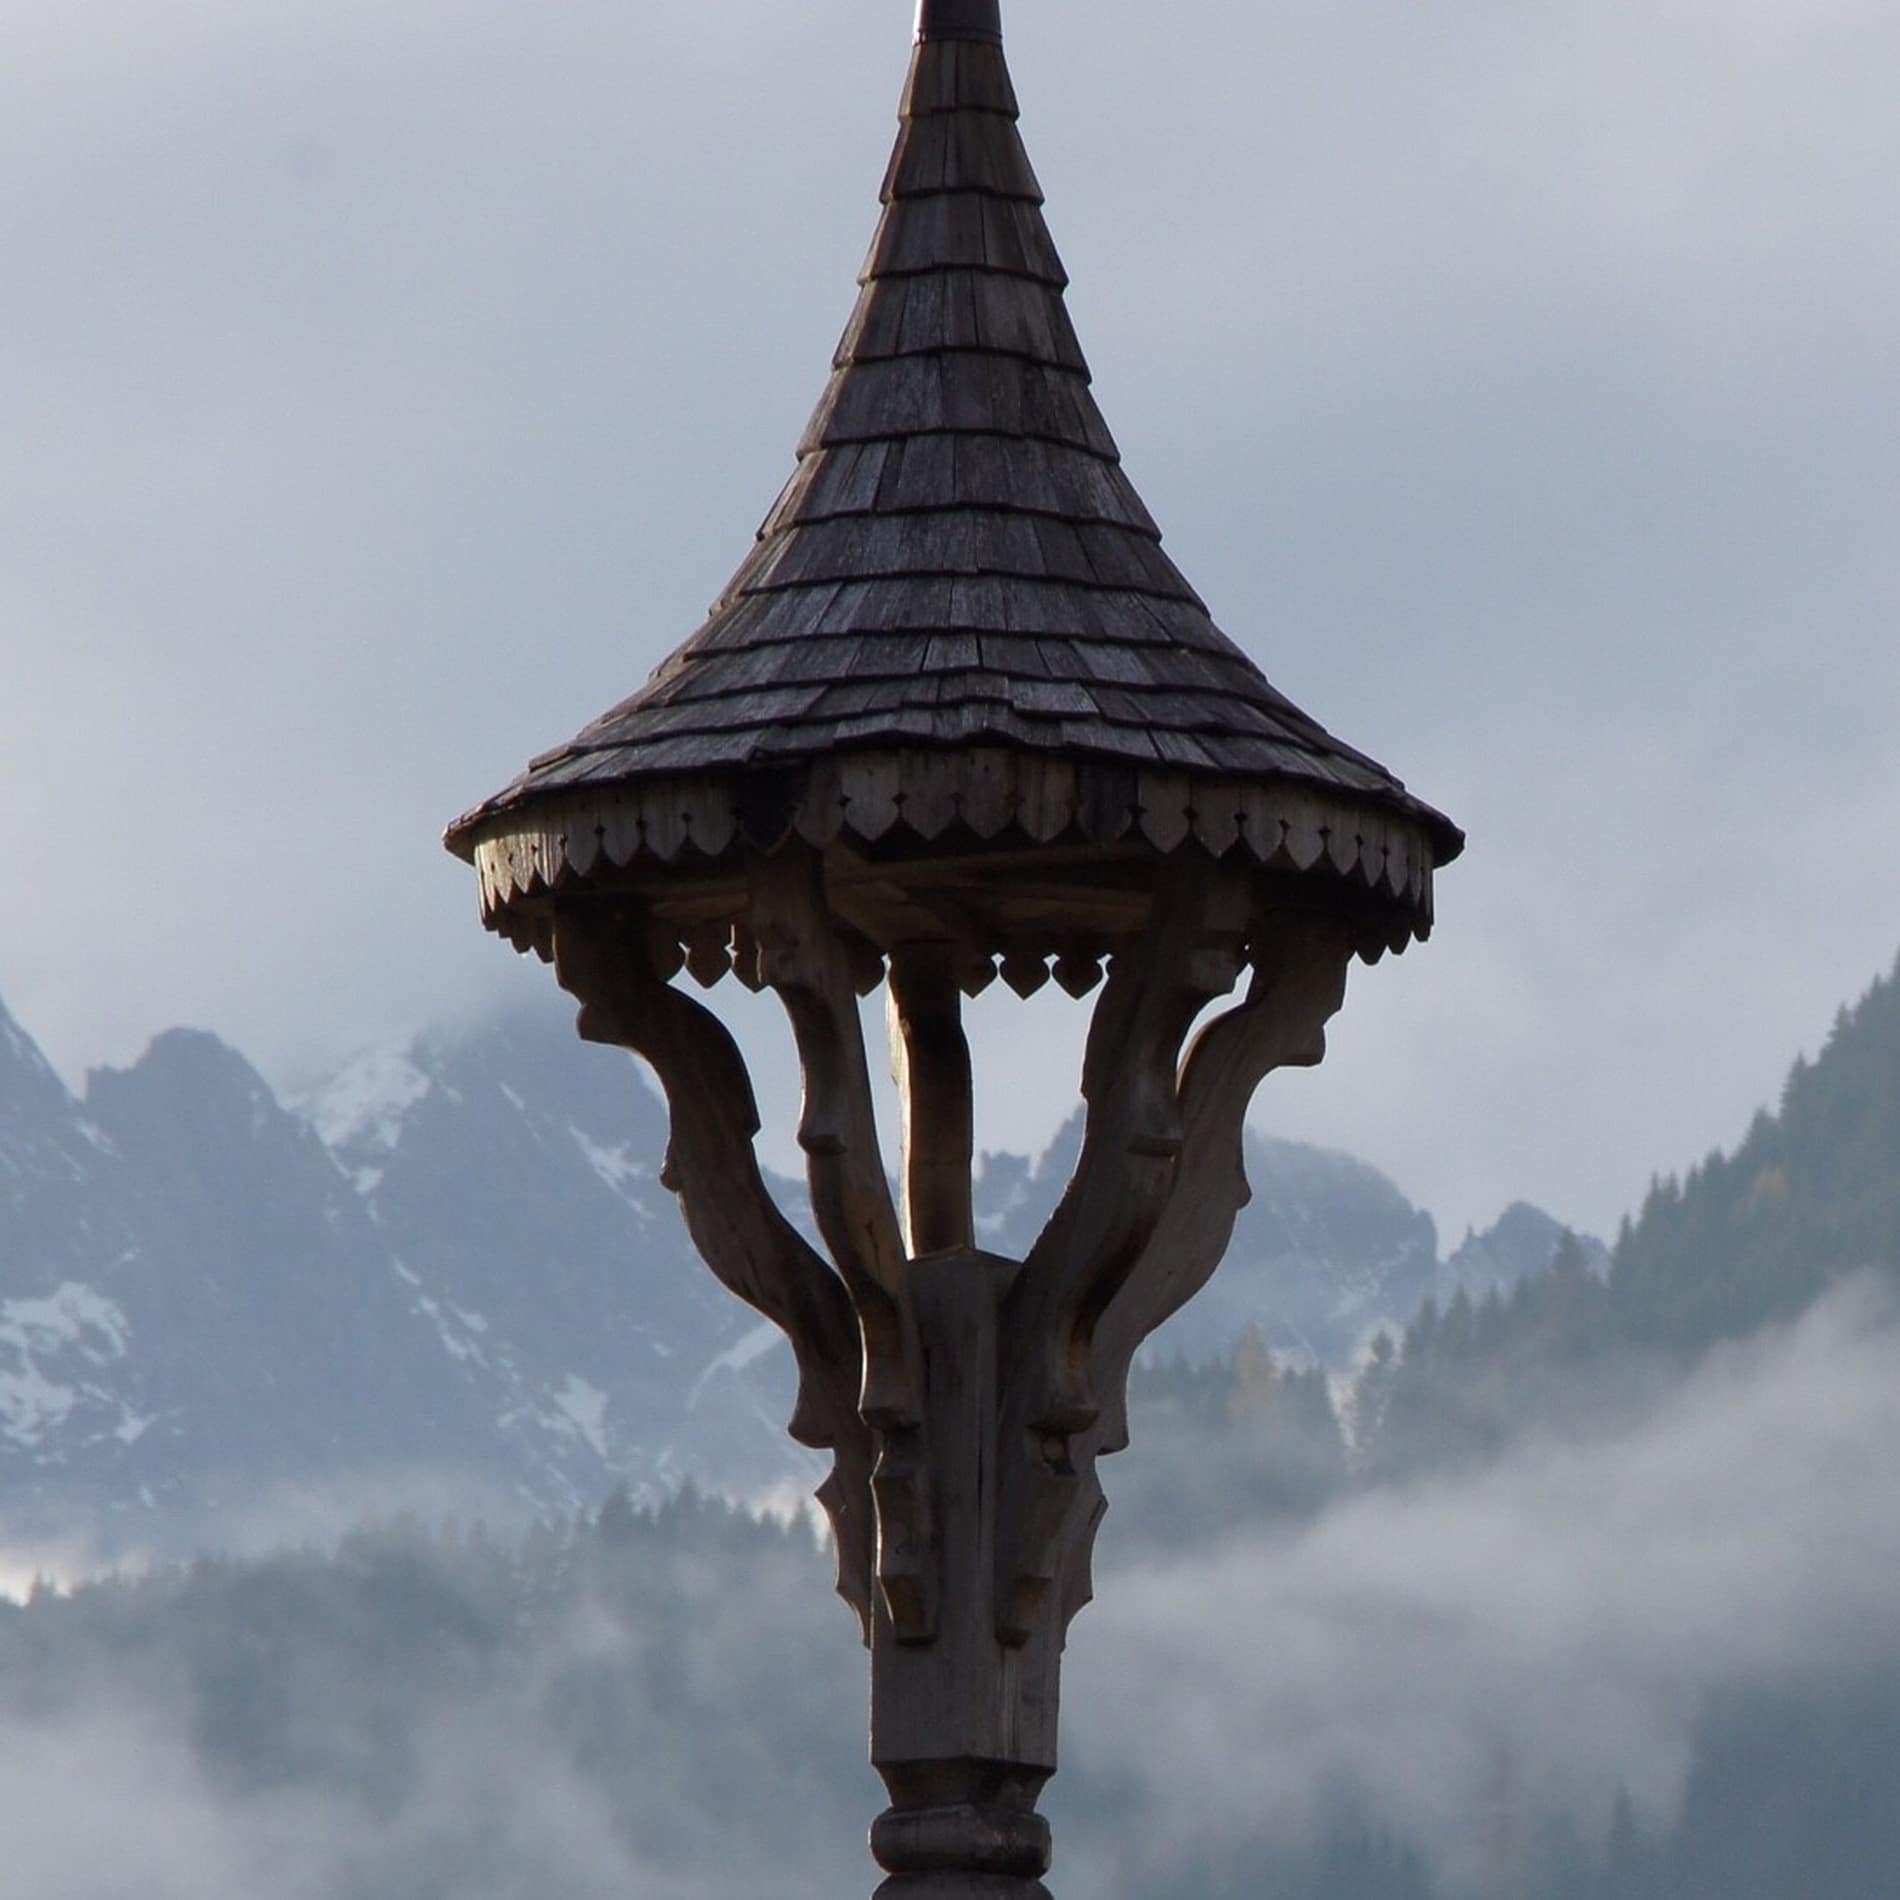 Auf dem Giebel der Tiroler Häuser ist oft ein charakteristischer Glockenstuhl mit rundem Spitzdach zu sehen